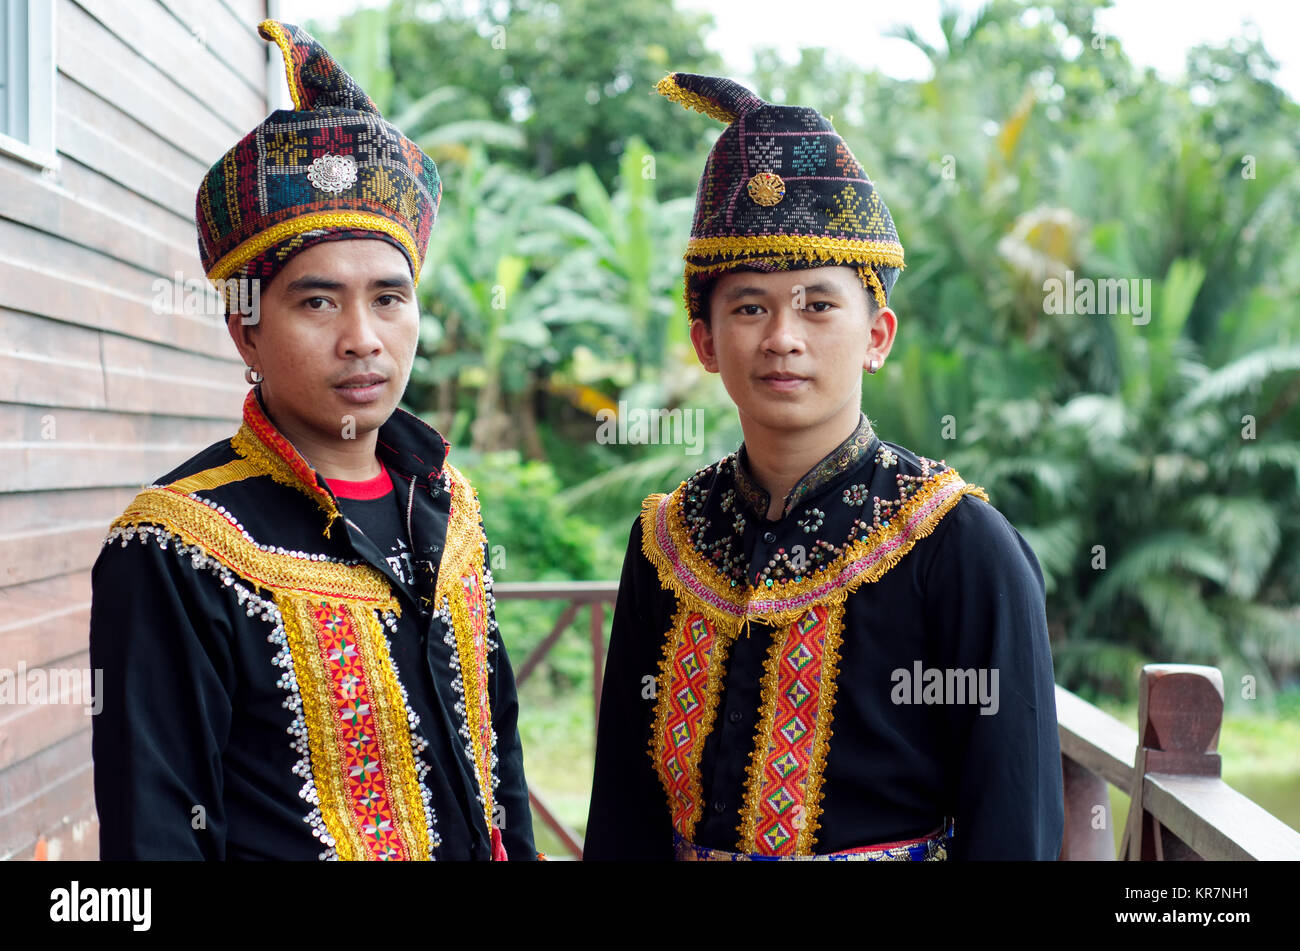 Junge Männer aus indigenen Bevölkerung von Sabah Borneo in Malaysia in traditioneller Kleidung während des Musik- und Tanzfestival. Stockfoto